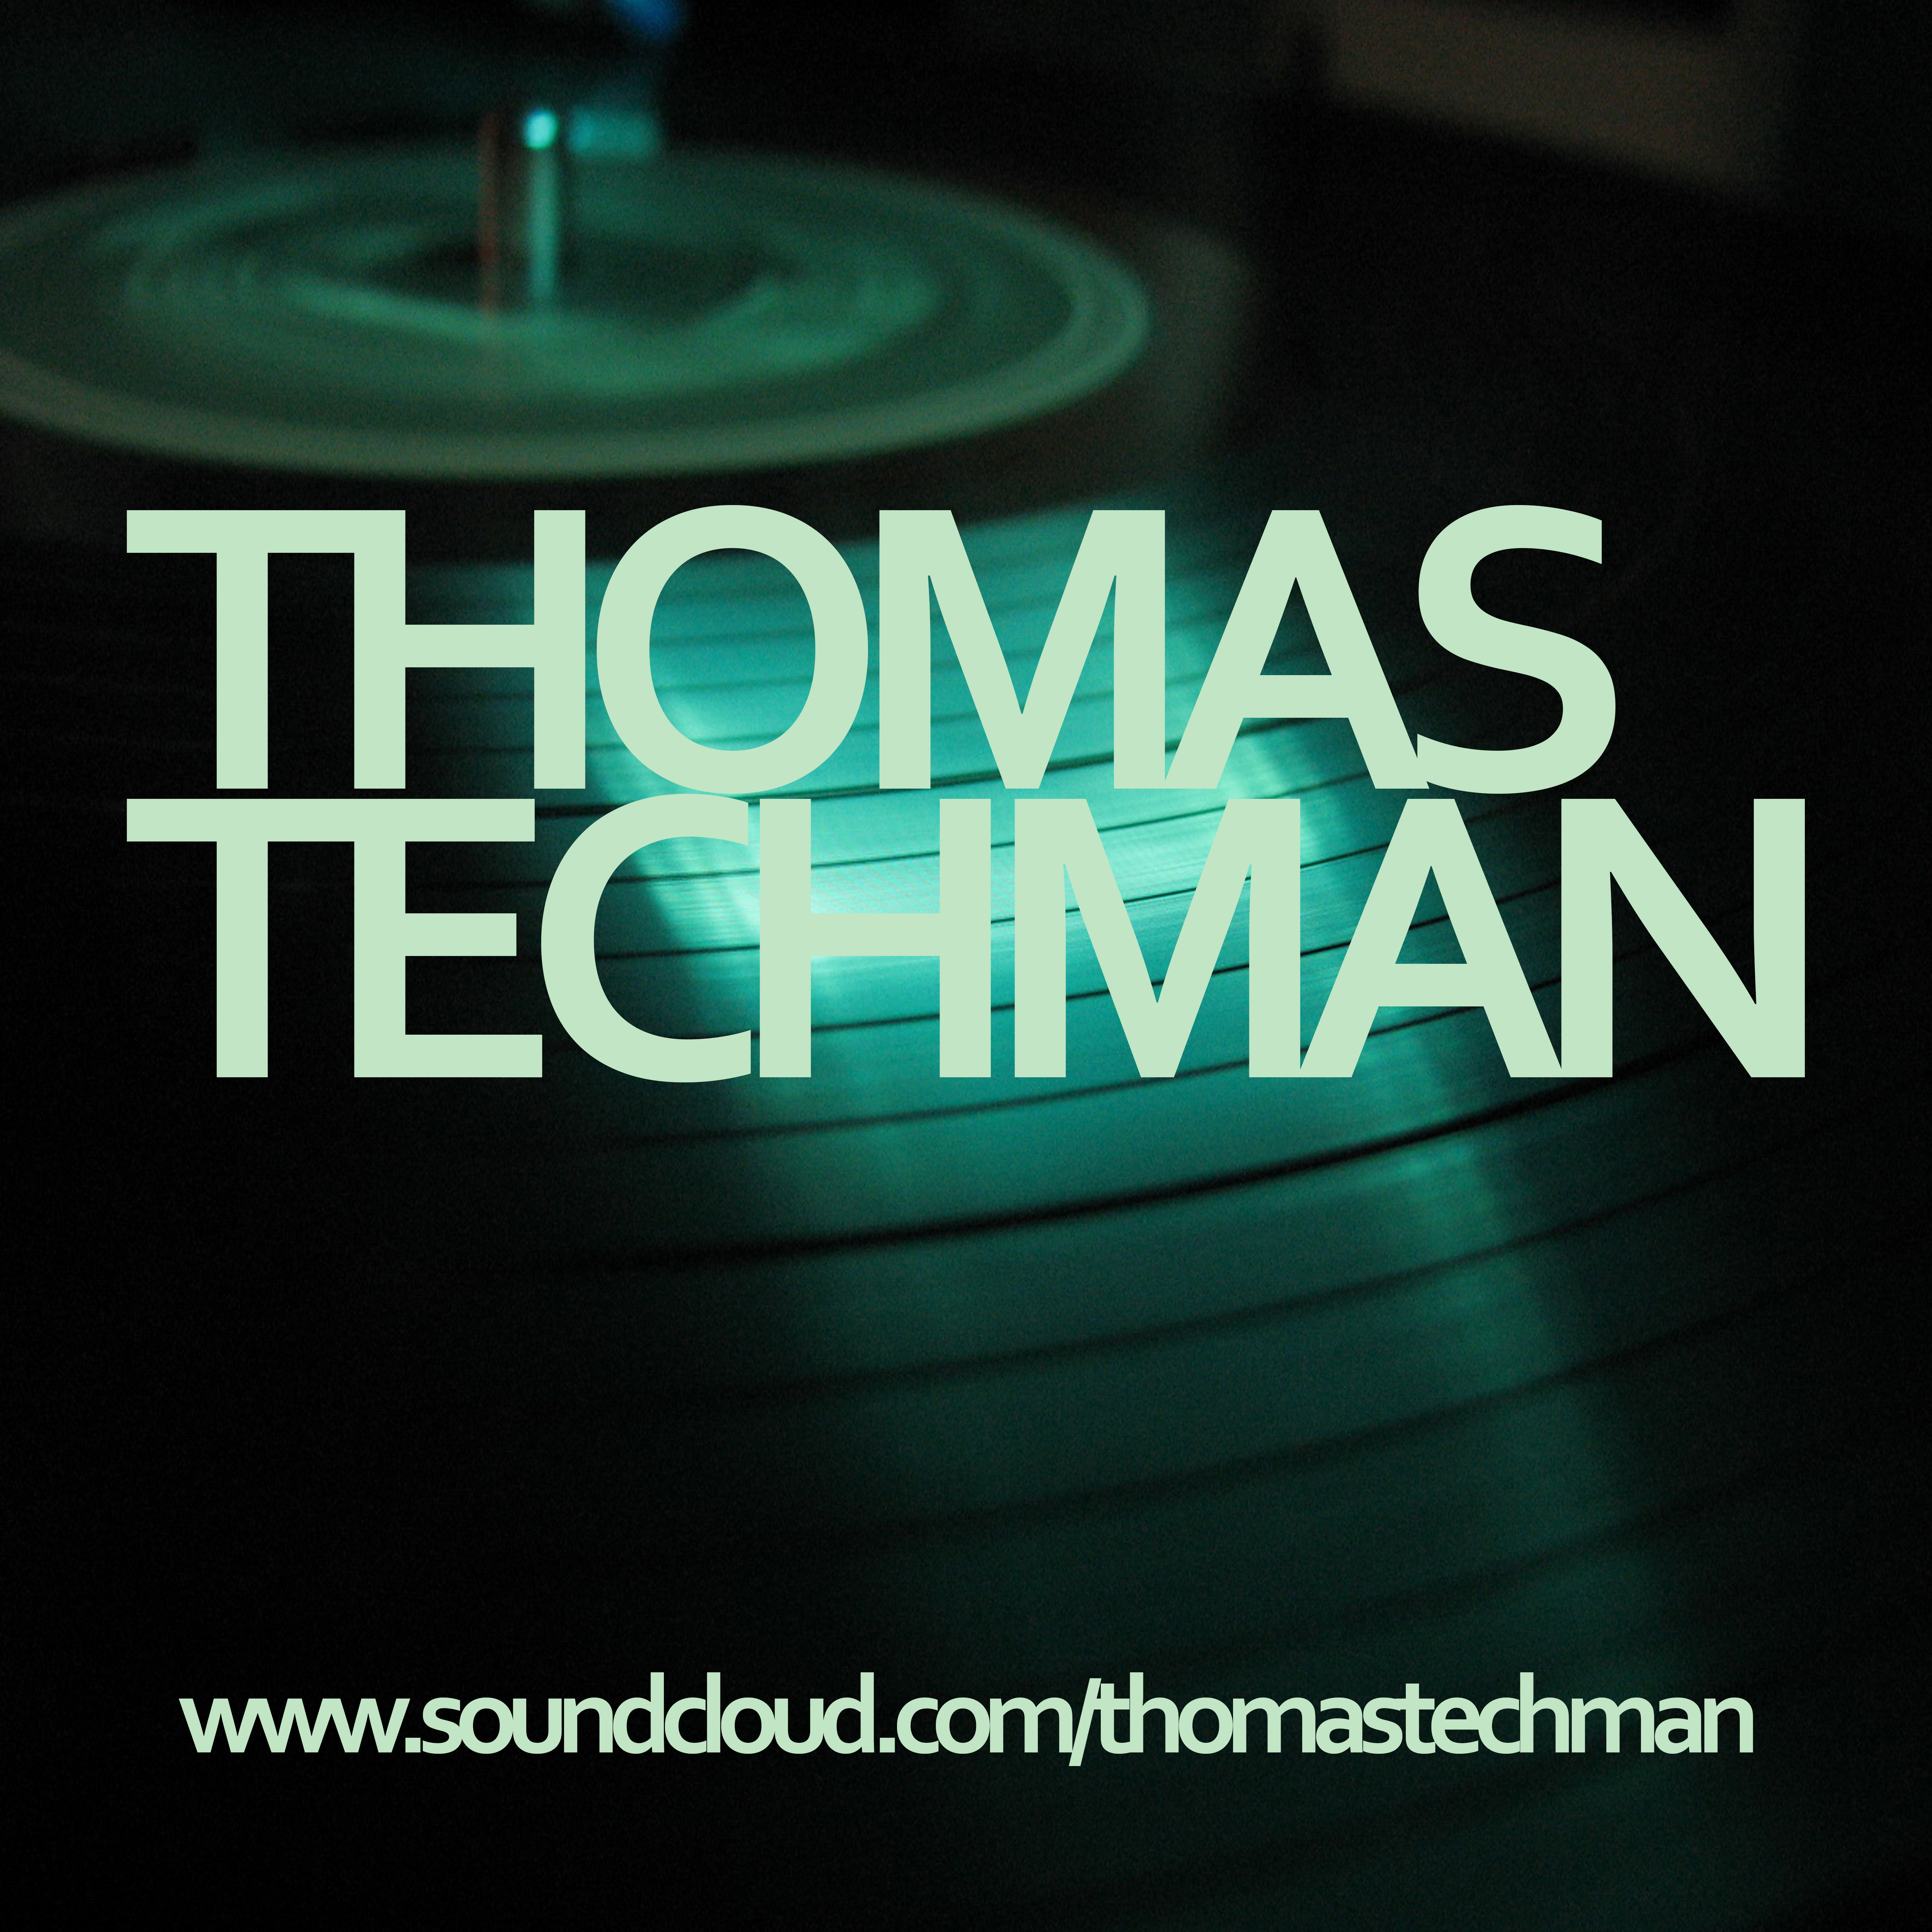 Thomas Techman